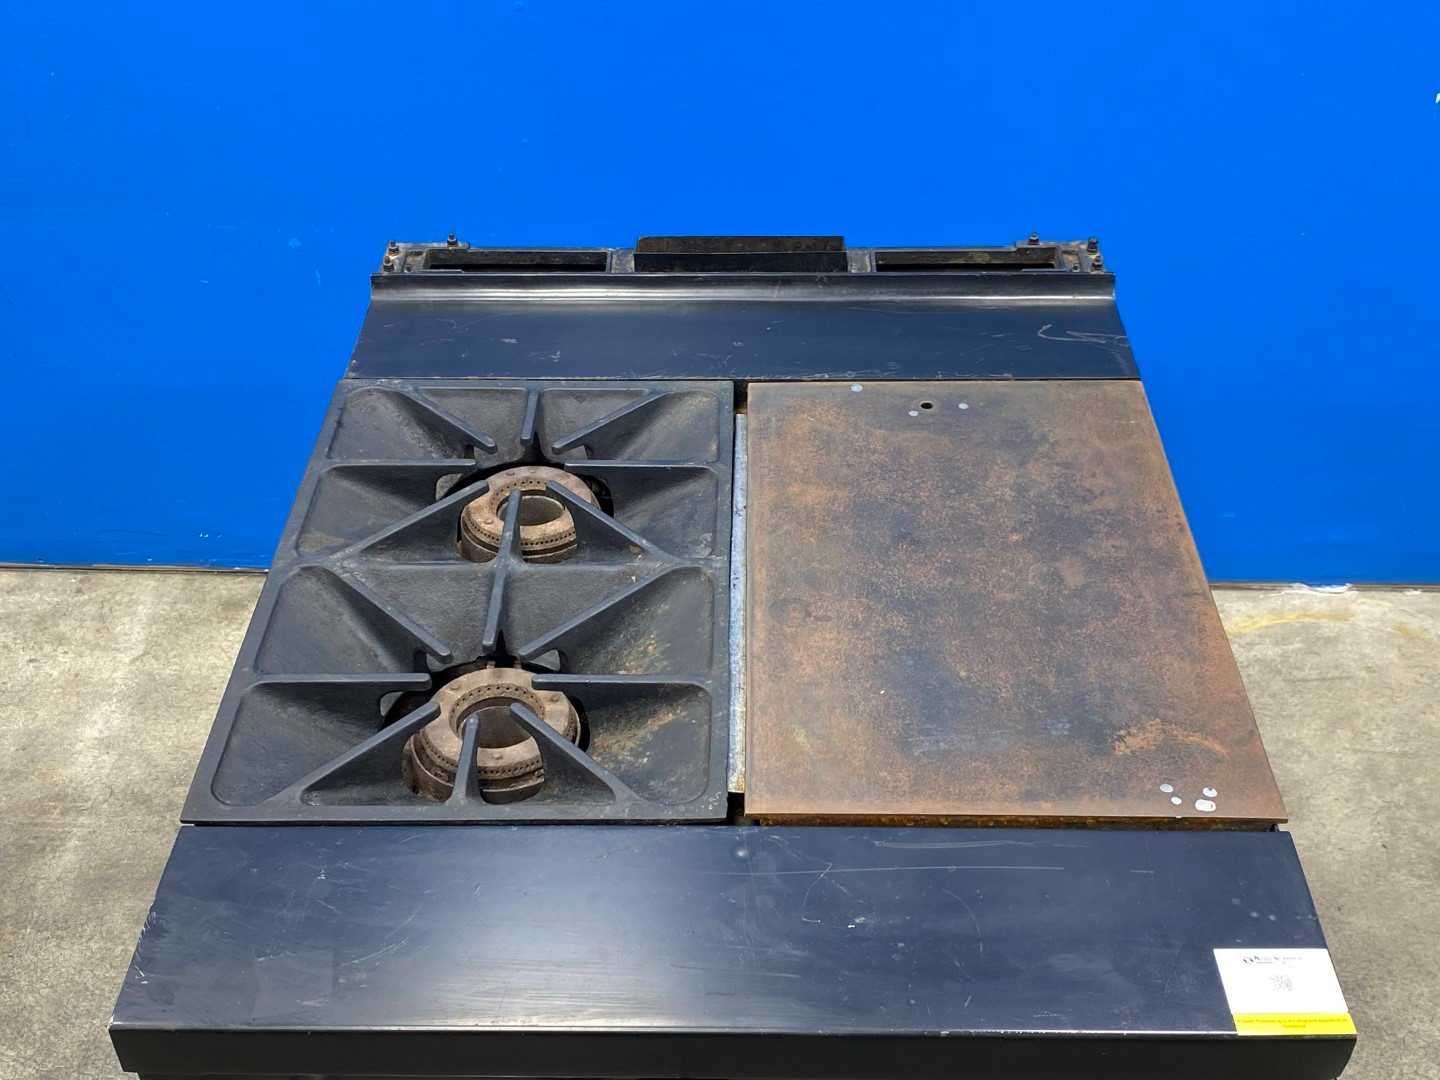 South Bend Model 1425 2 Star Burner Range with Griddle & Oven